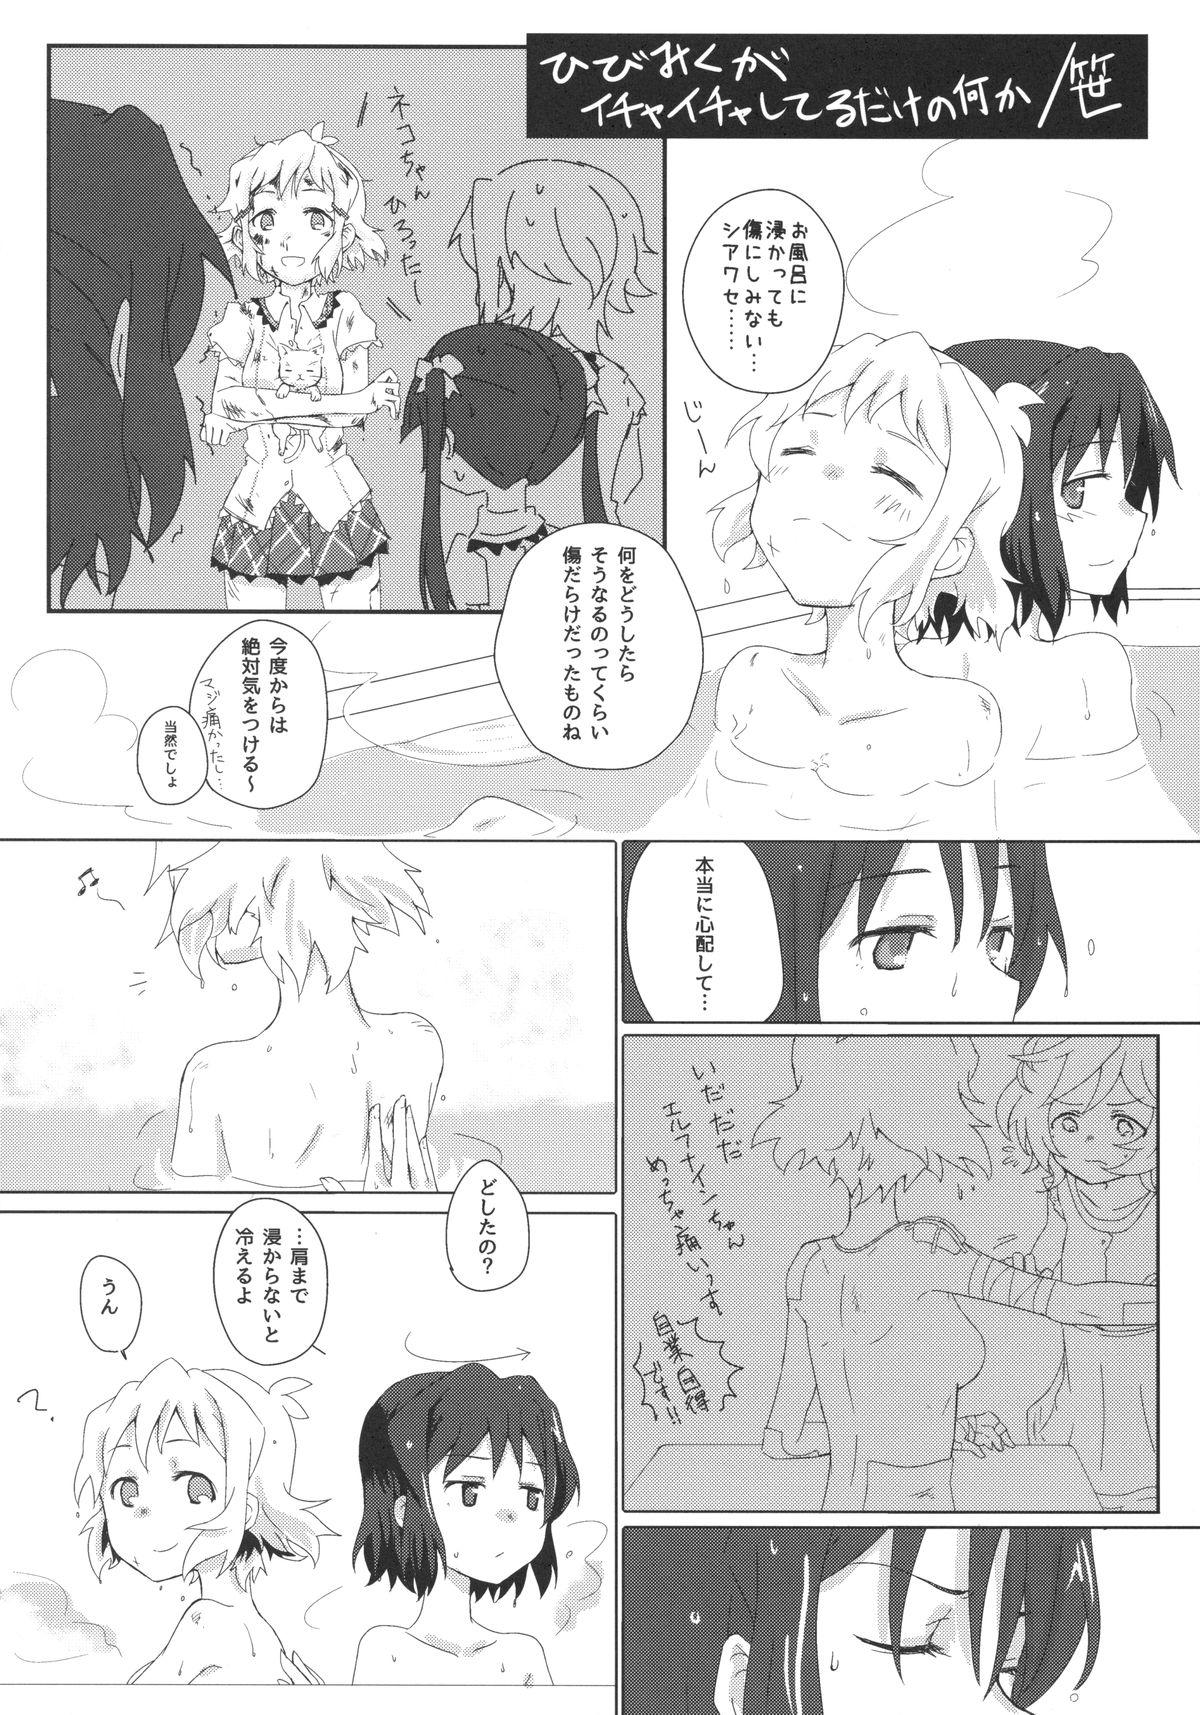 Fake Tits Niji to Hana ga Tsumuida Kiseki - Senki zesshou symphogear Guys - Page 9